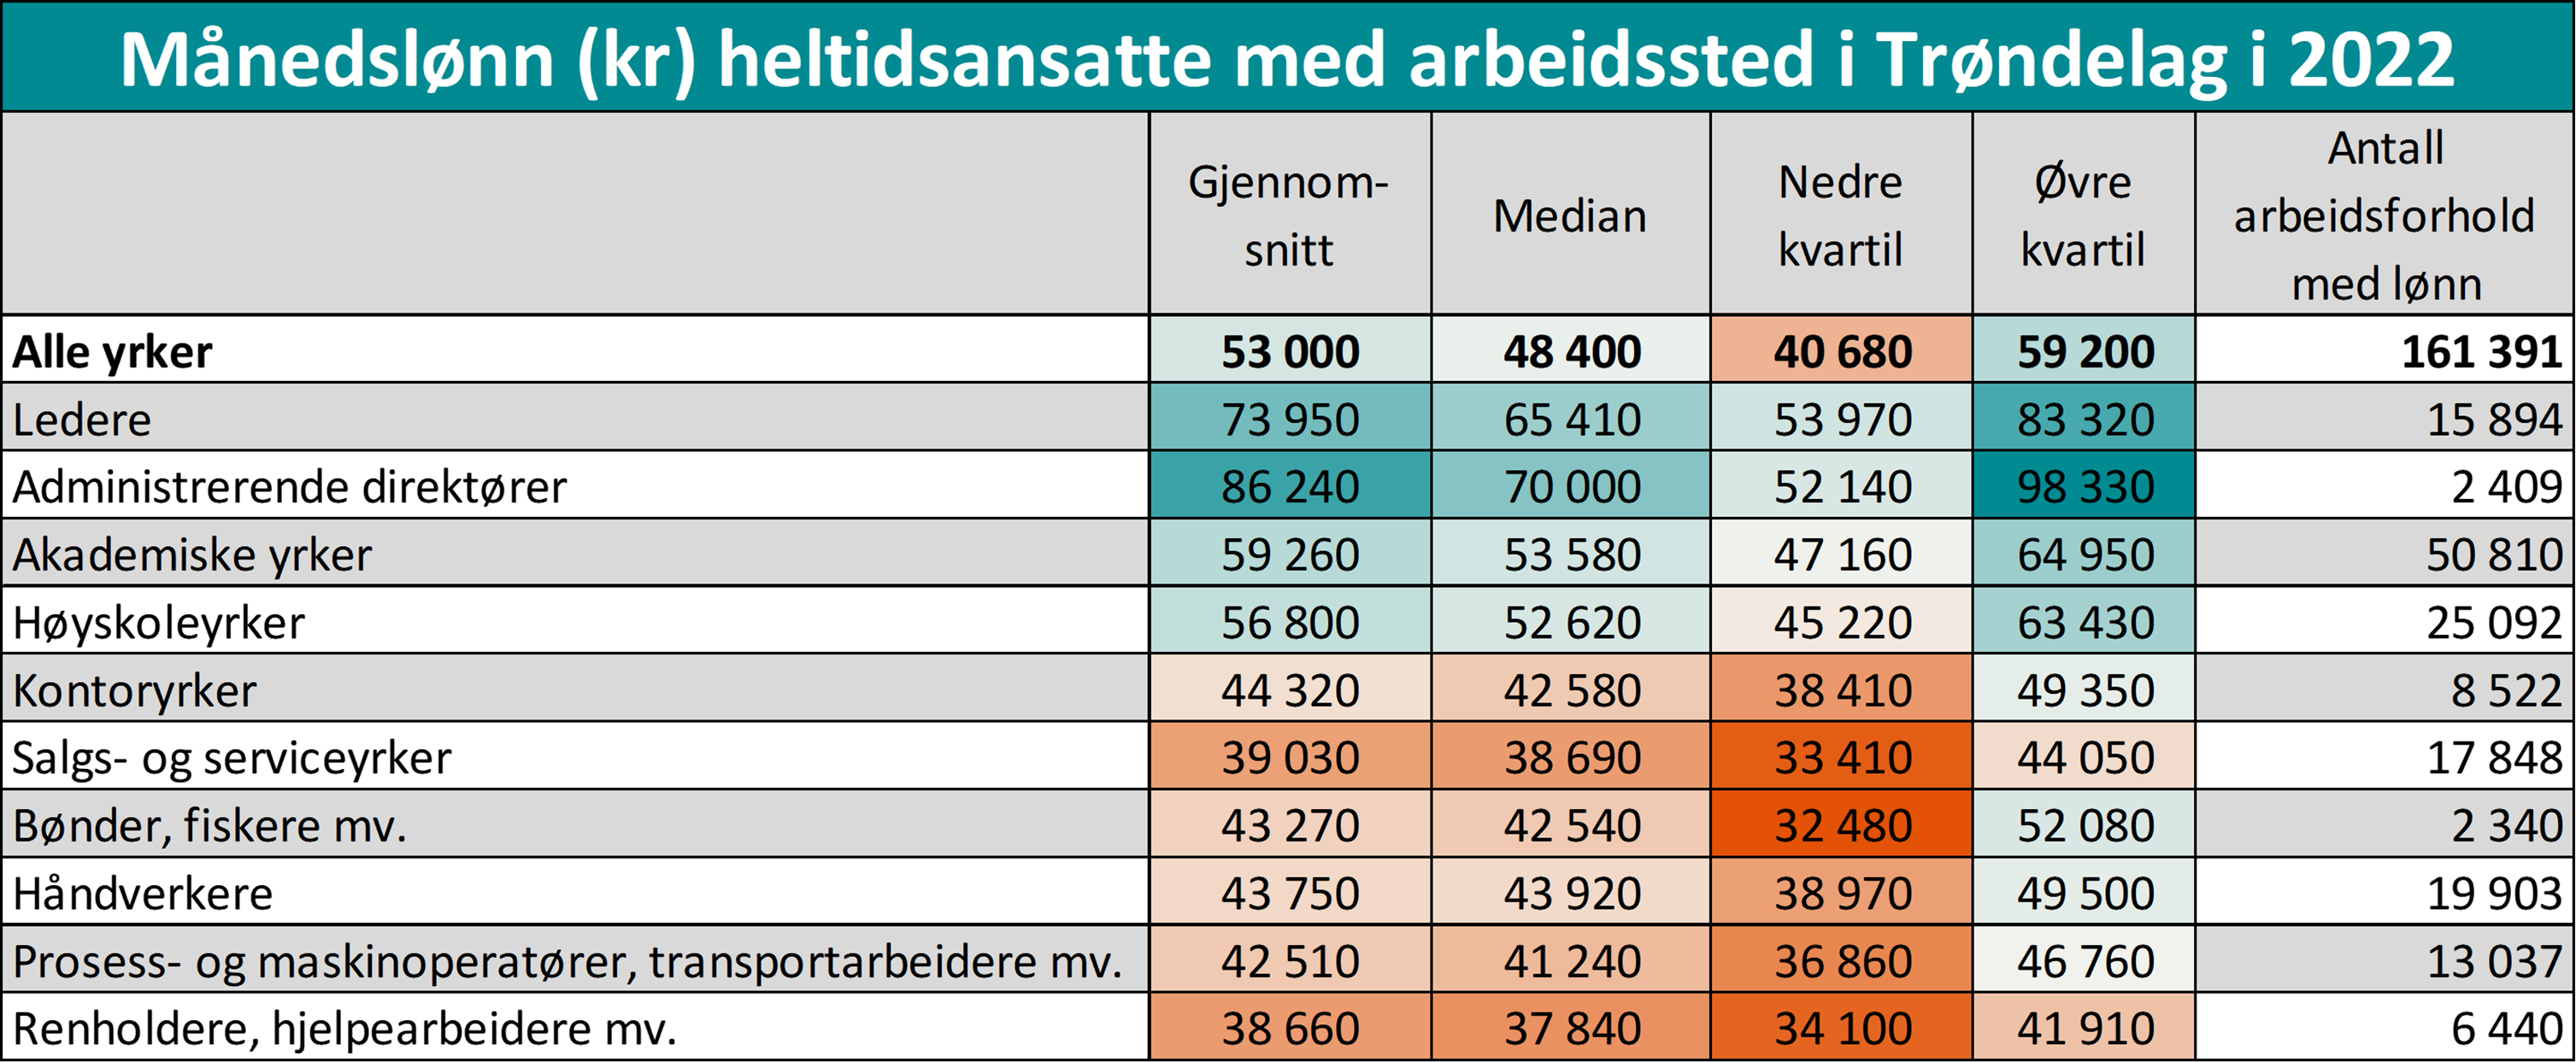 Månedslønn (kr) heltidsansatte med arbeidssted i Trøndelag i 2022